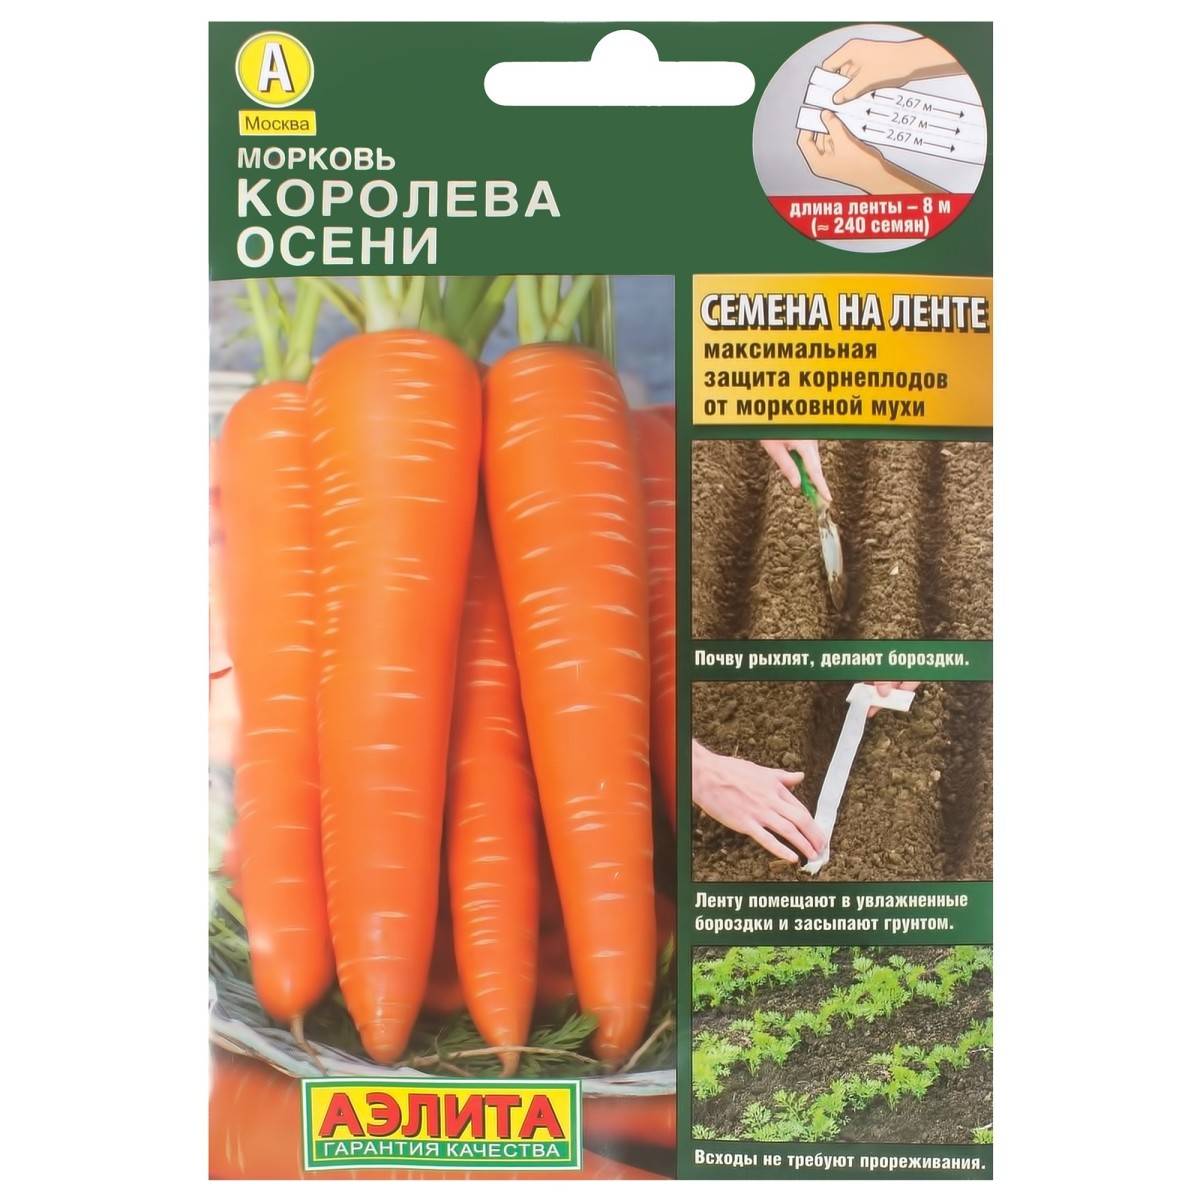 Морковь королева осени - описание сорта, особенности выращивания + фото и отзывы